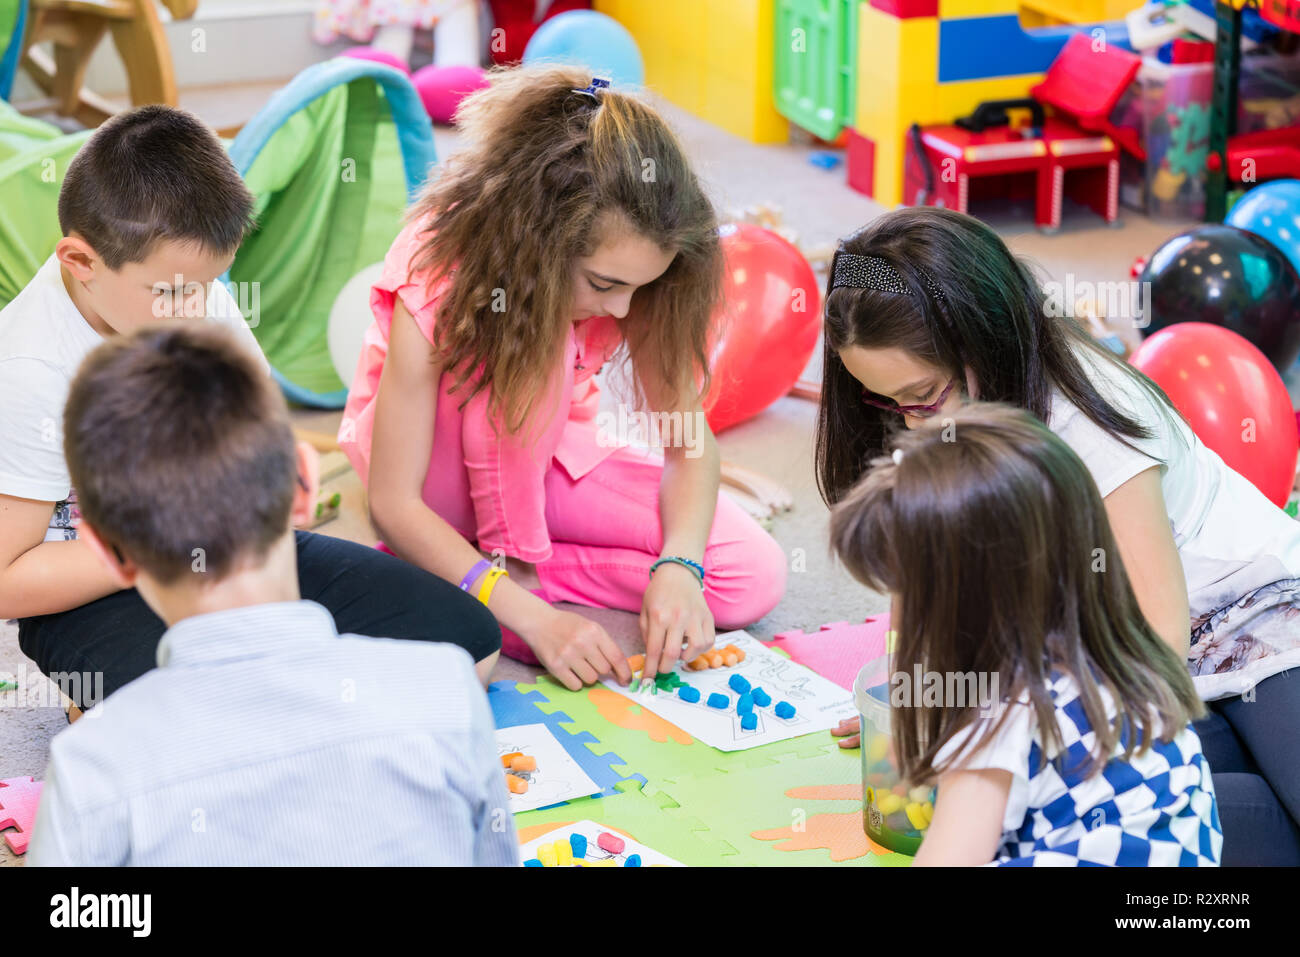 Grupo de niños aplicando coloridos plastilina durante la actividad educativa Foto de stock